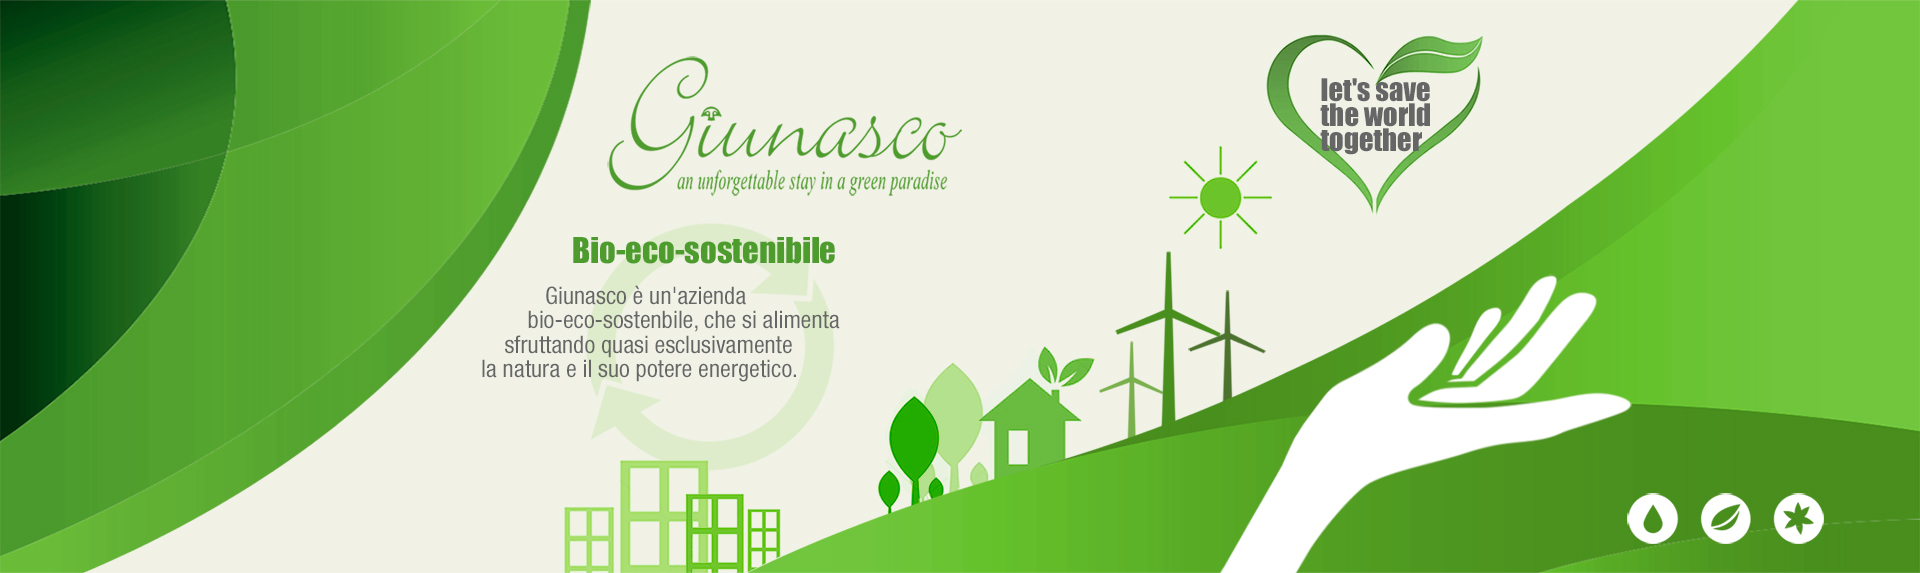 Giunasco Azienda Bio-Eco sostenibile